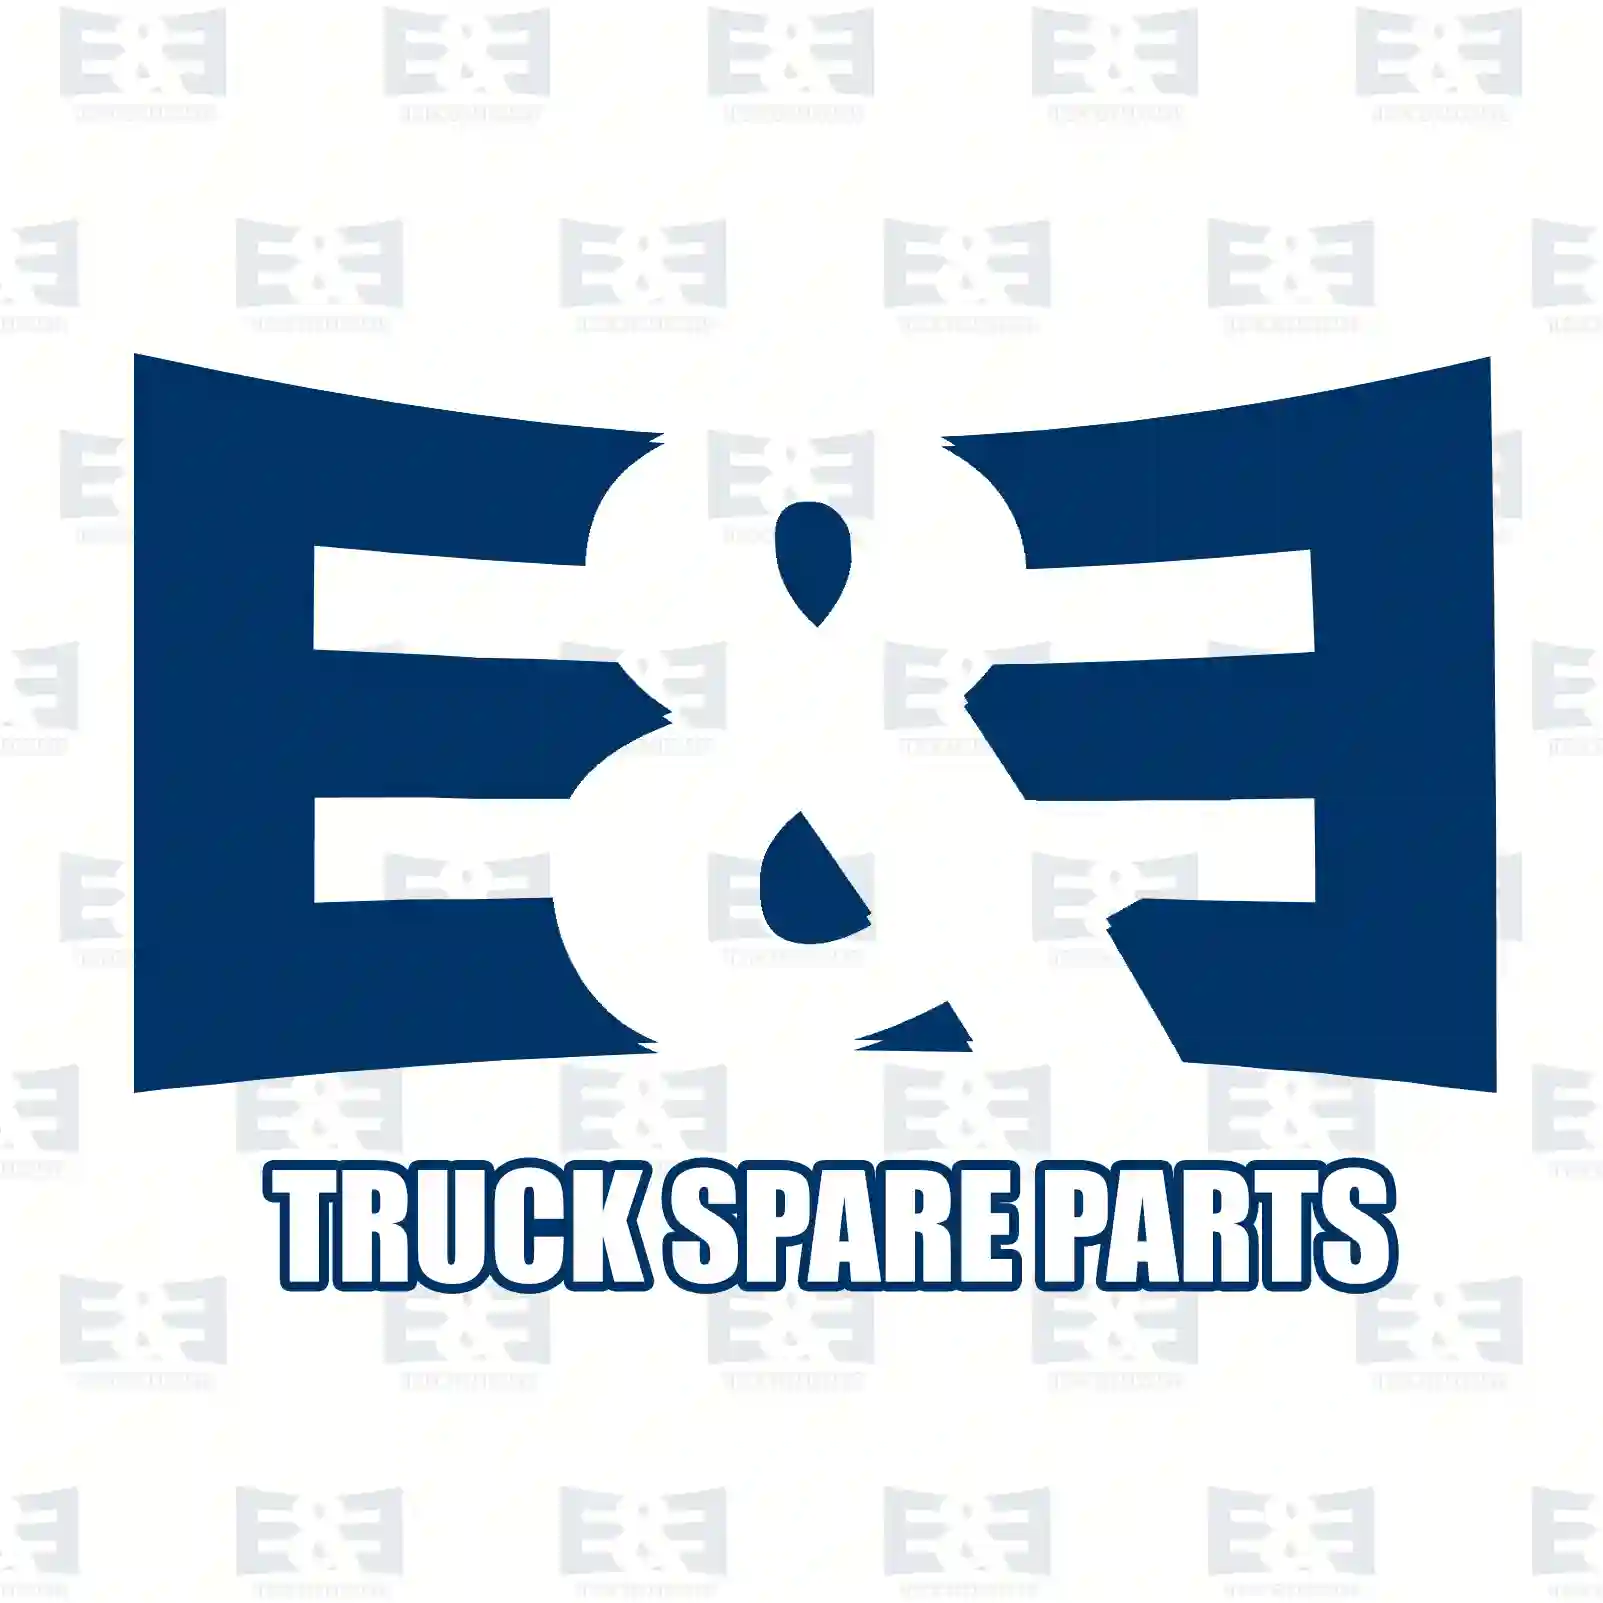 Cabin air filter, 2E2276224, 0008358947, 0018350747, 7424993601 ||  2E2276224 E&E Truck Spare Parts | Truck Spare Parts, Auotomotive Spare Parts Cabin air filter, 2E2276224, 0008358947, 0018350747, 7424993601 ||  2E2276224 E&E Truck Spare Parts | Truck Spare Parts, Auotomotive Spare Parts